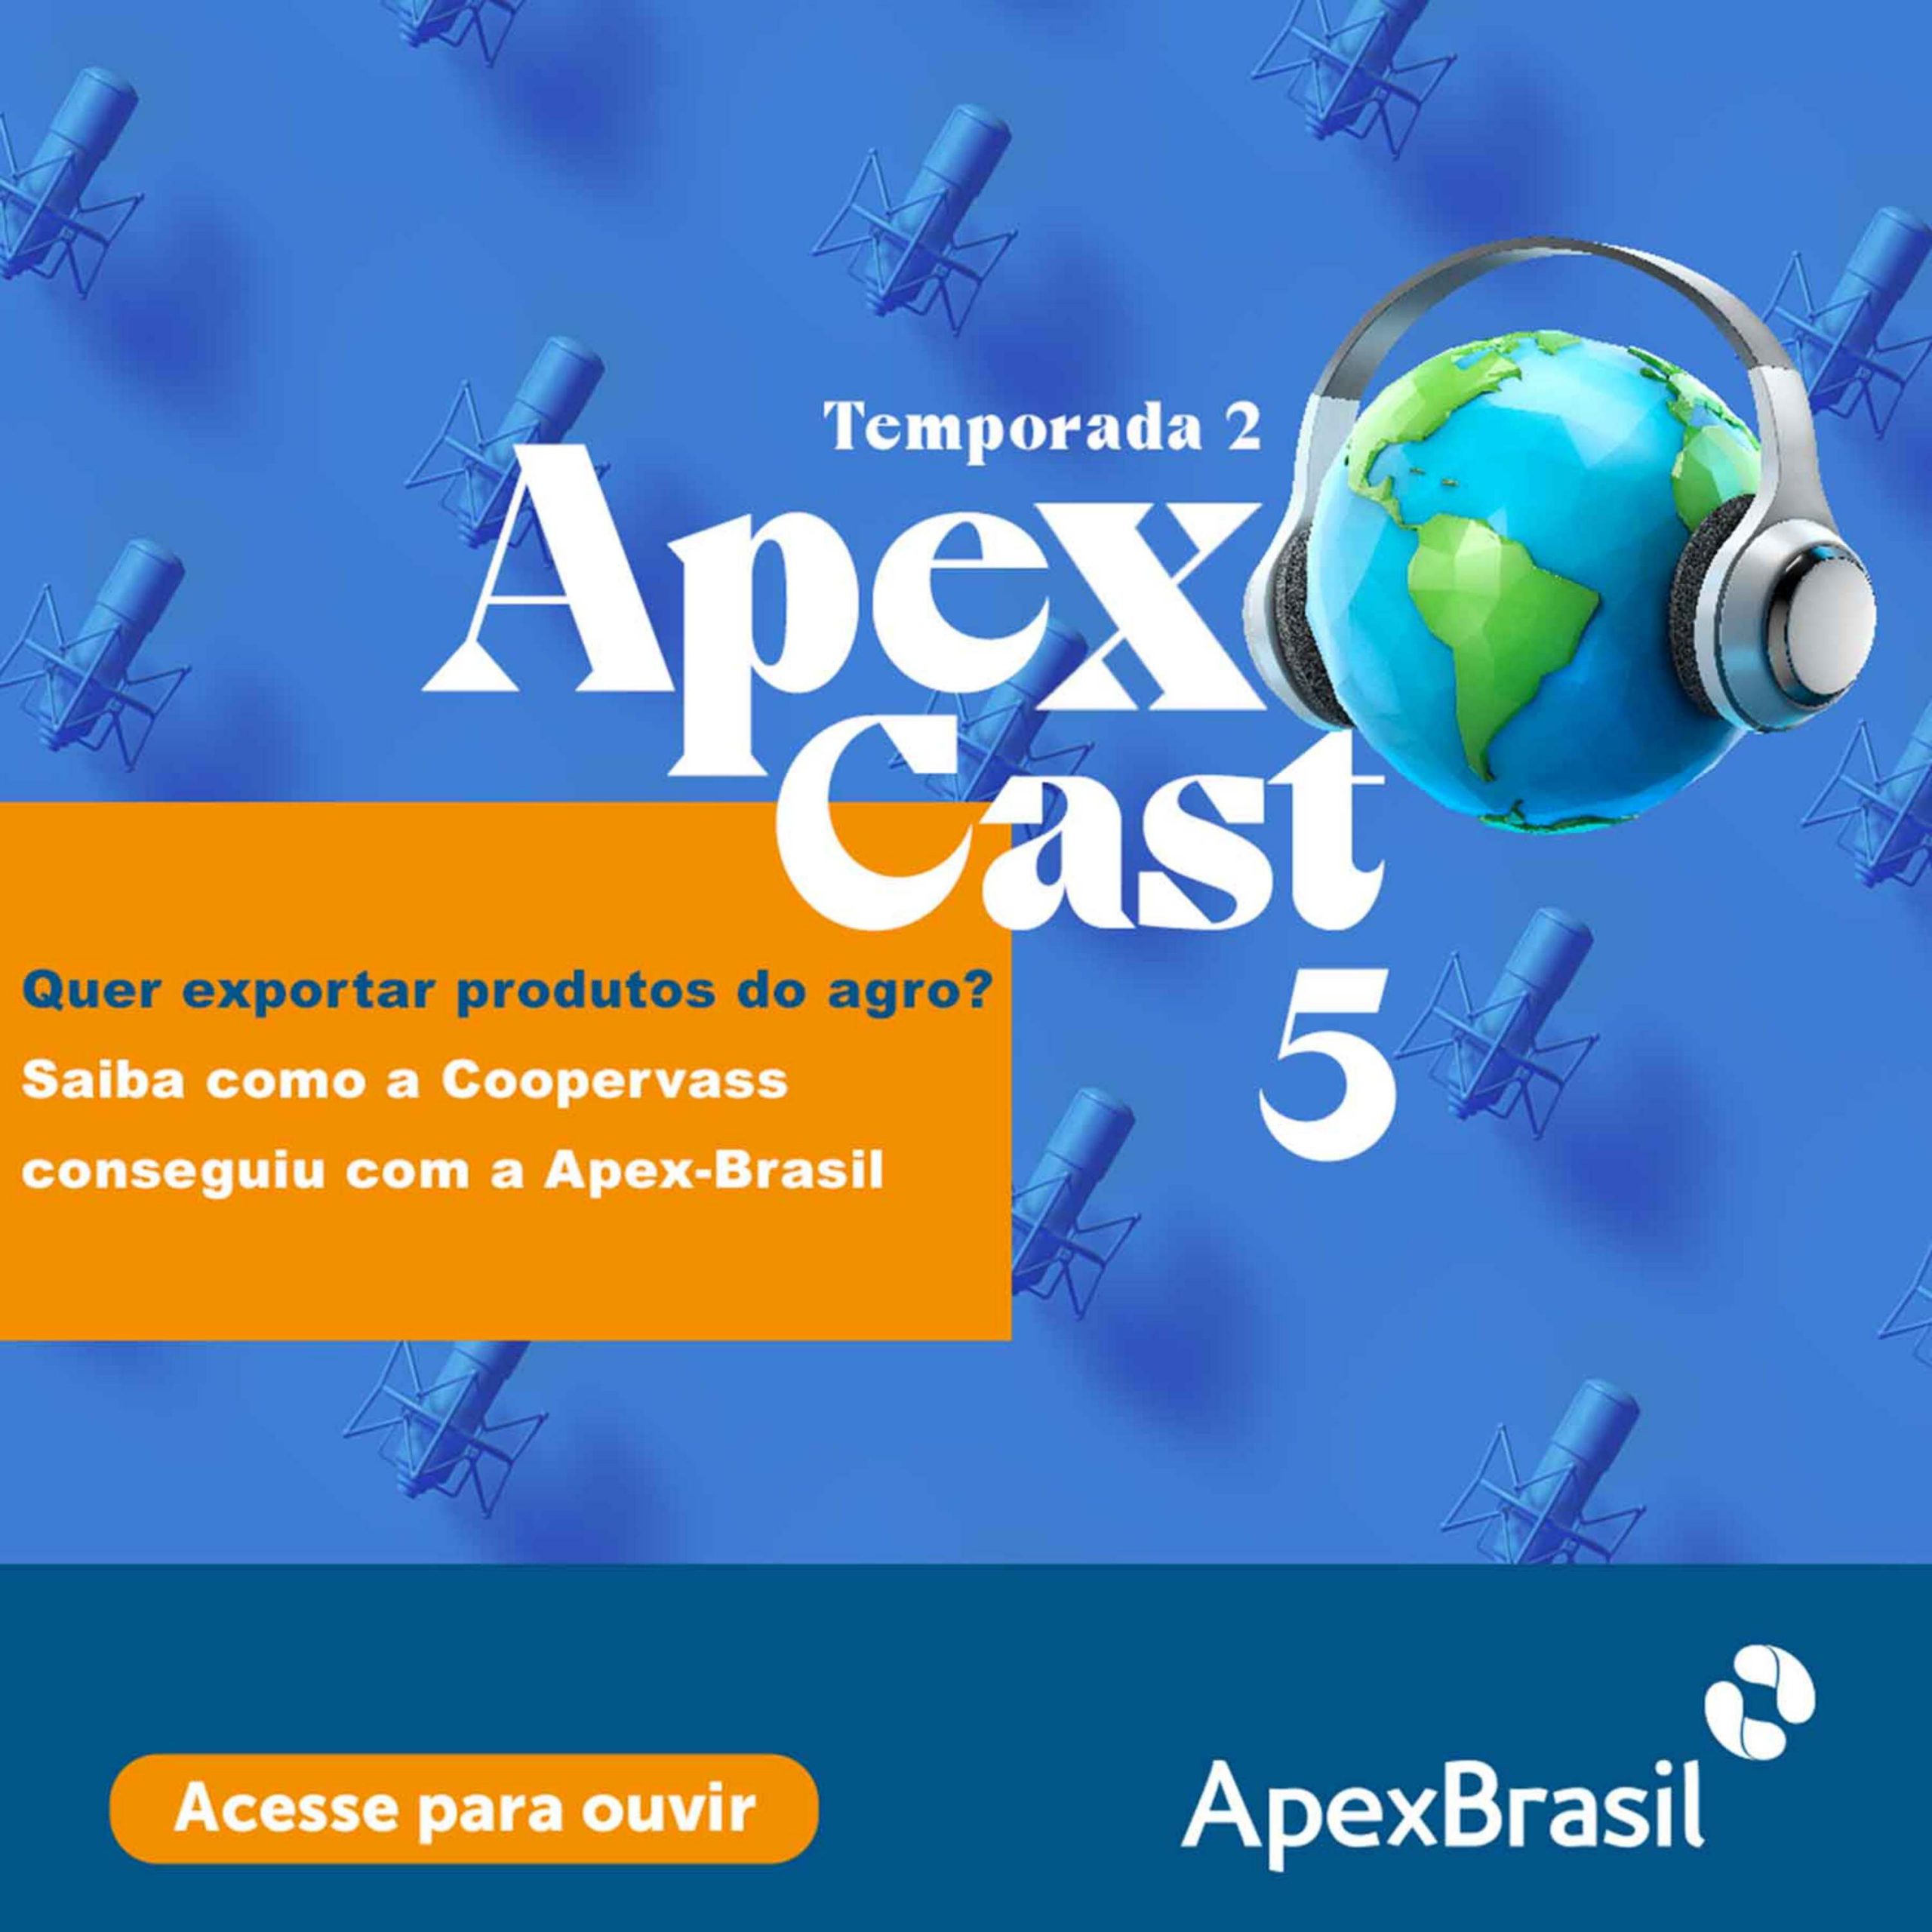 ApexCast mostra a experiência da Coopervass, que realizou sua primeira exportação de cafés especiais com o apoio da Apex-Brasil